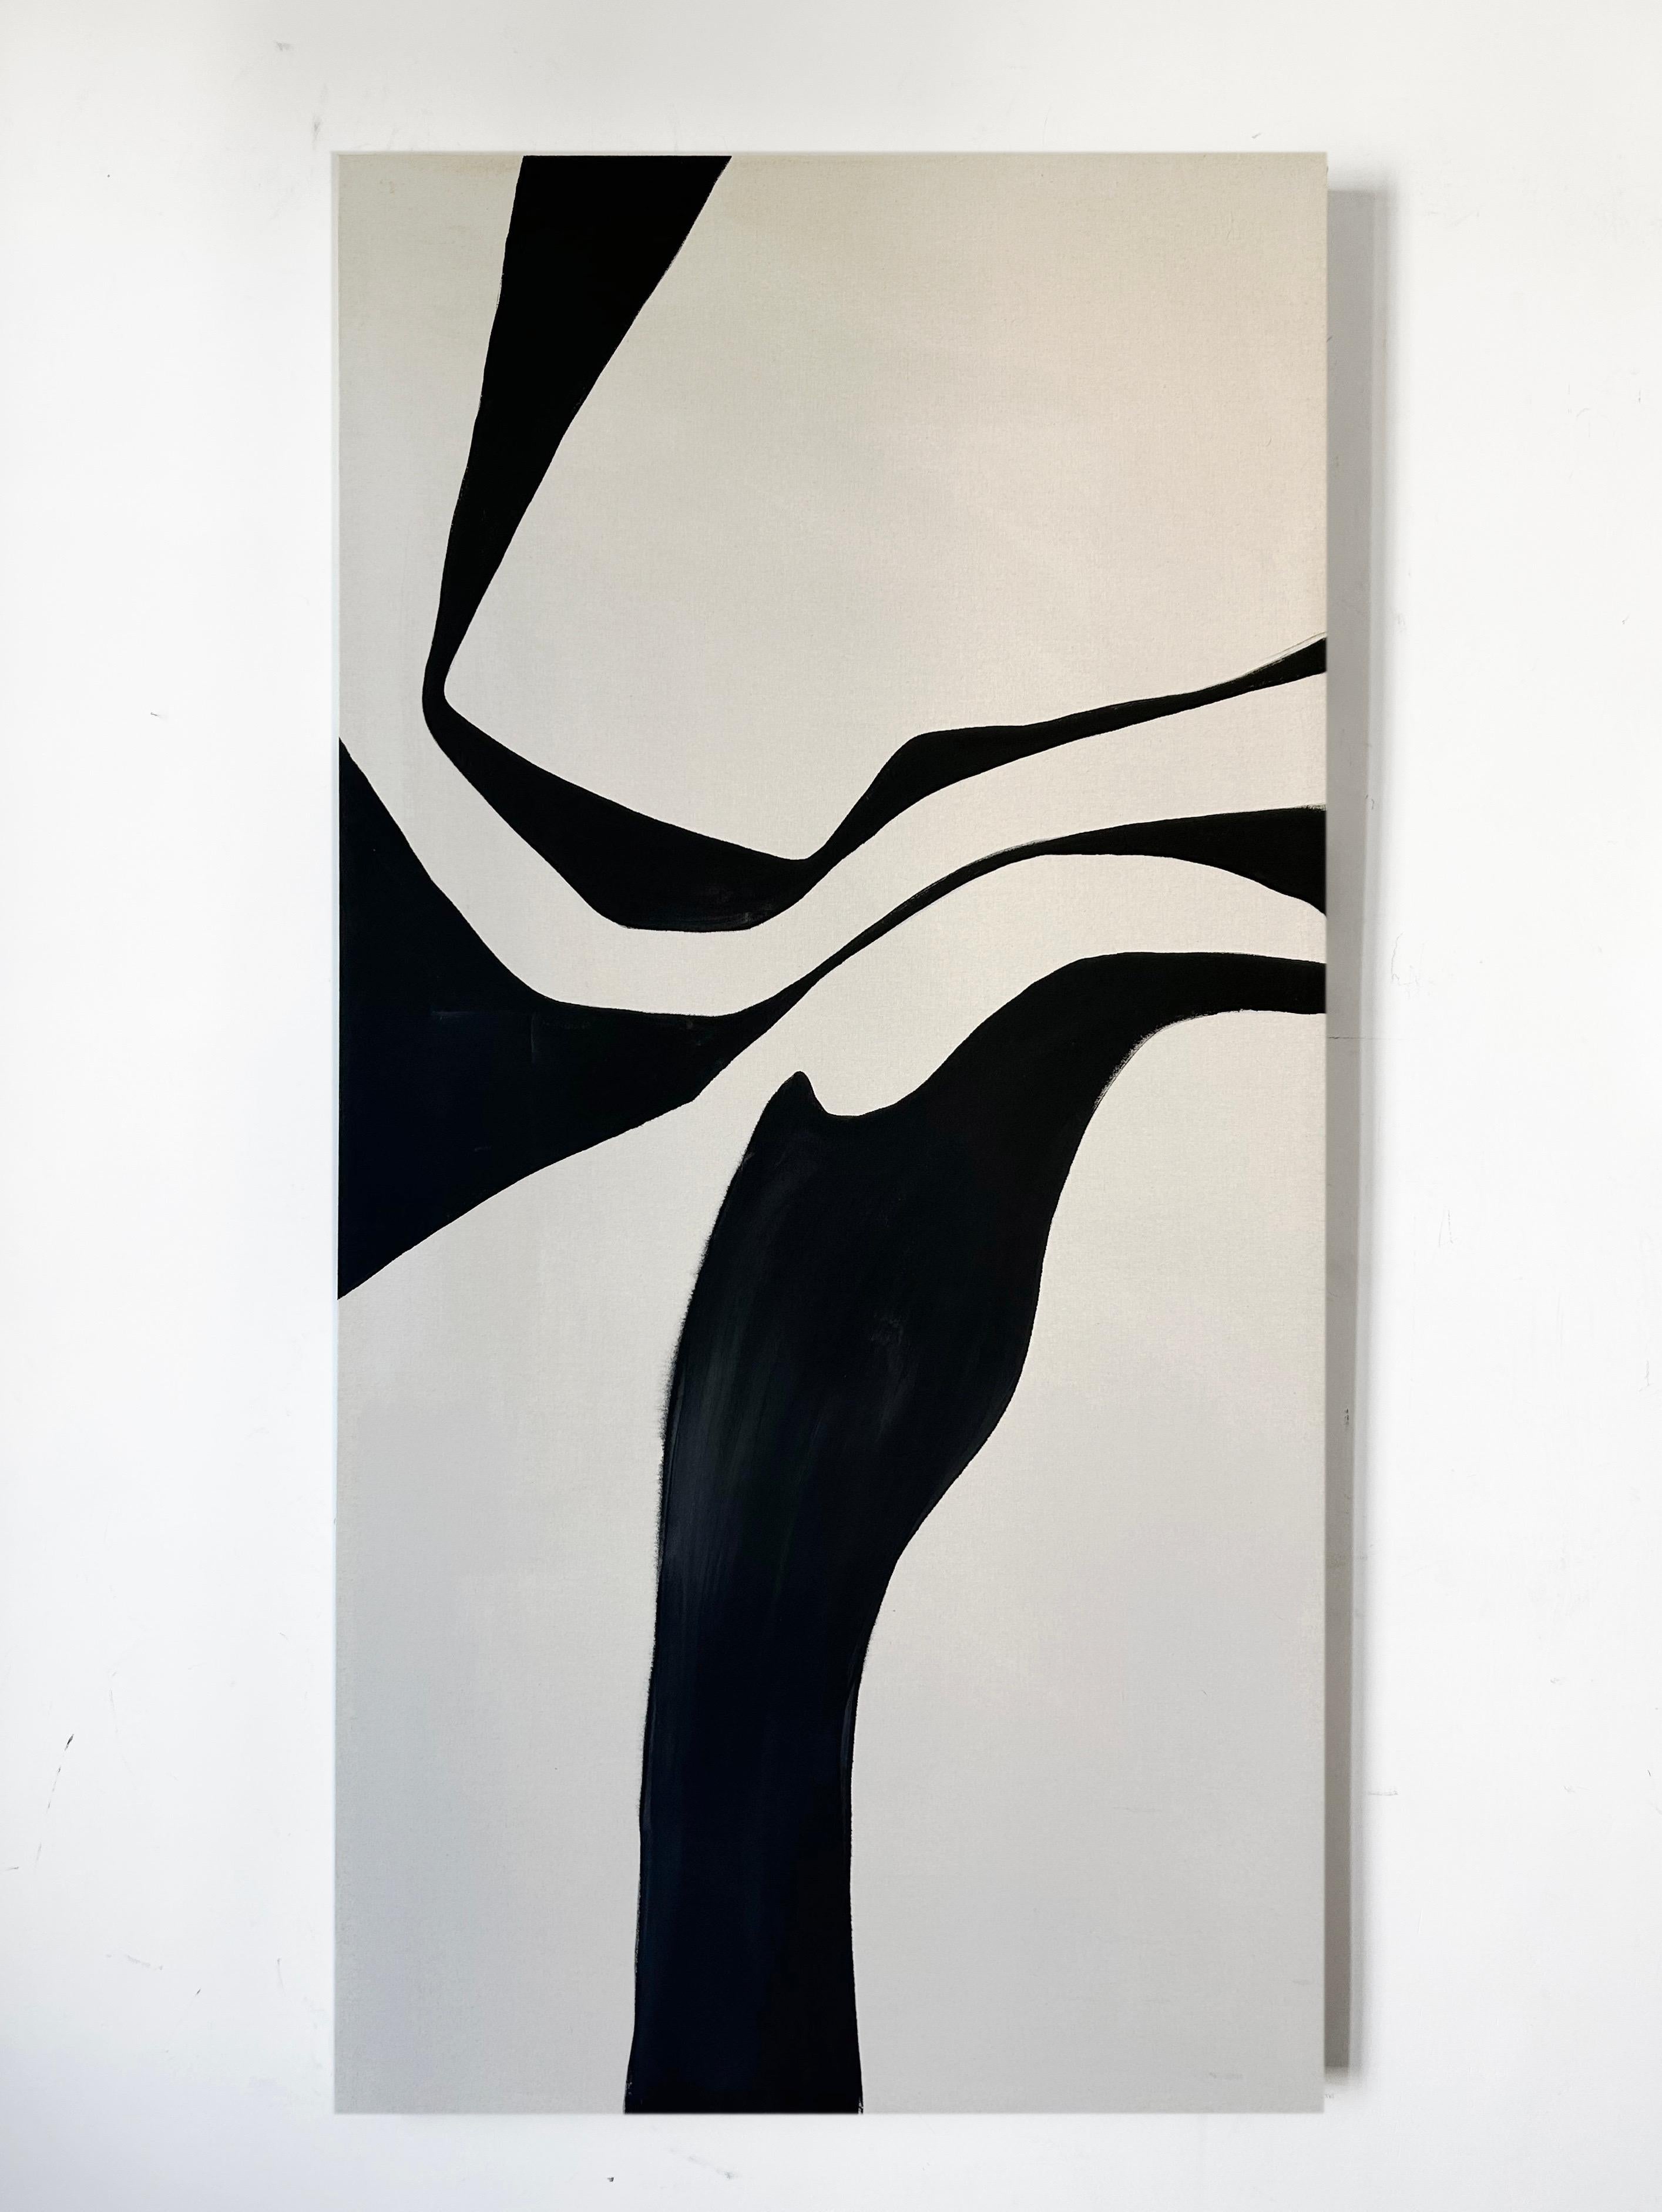 AGR Abstract Painting – ABSTRACT Kunstwerk in Schwarz und Weiß ohne Titel der spanischen Künstlerin Alicia Gimeno